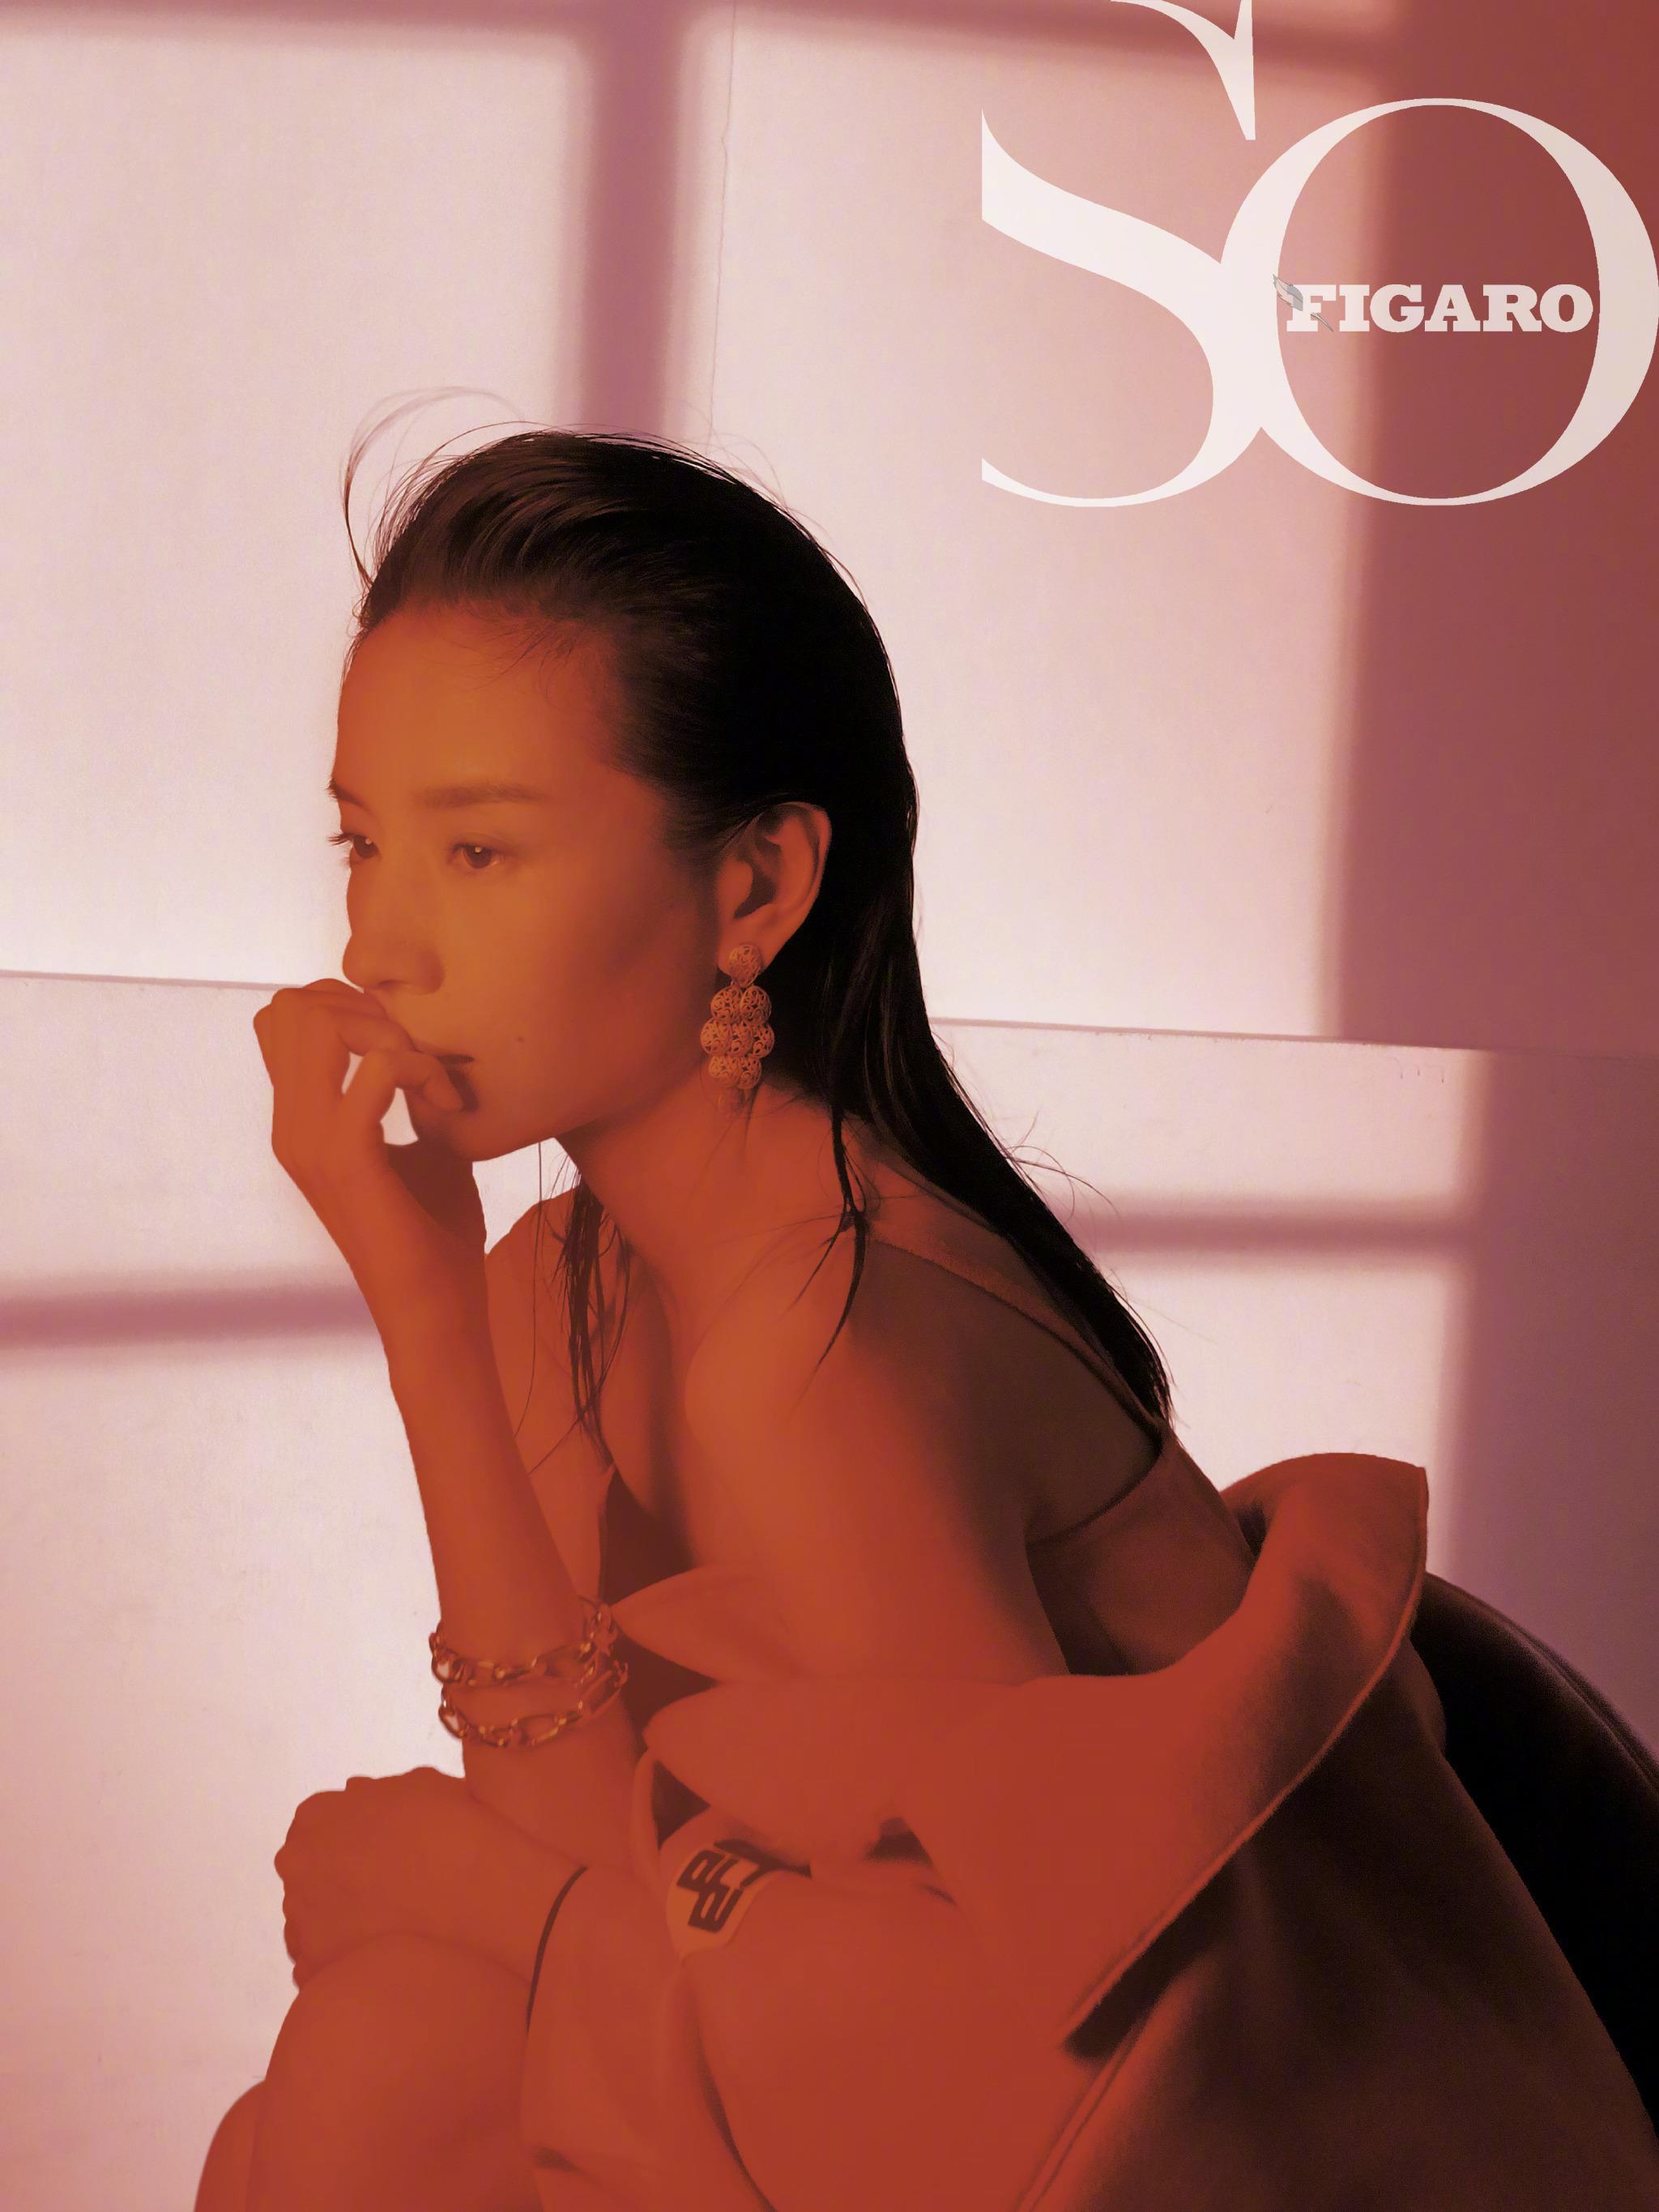 《SoFigaro》7月新刊, 董洁 身穿Prada服饰登封 散发着成熟优雅的魅力,